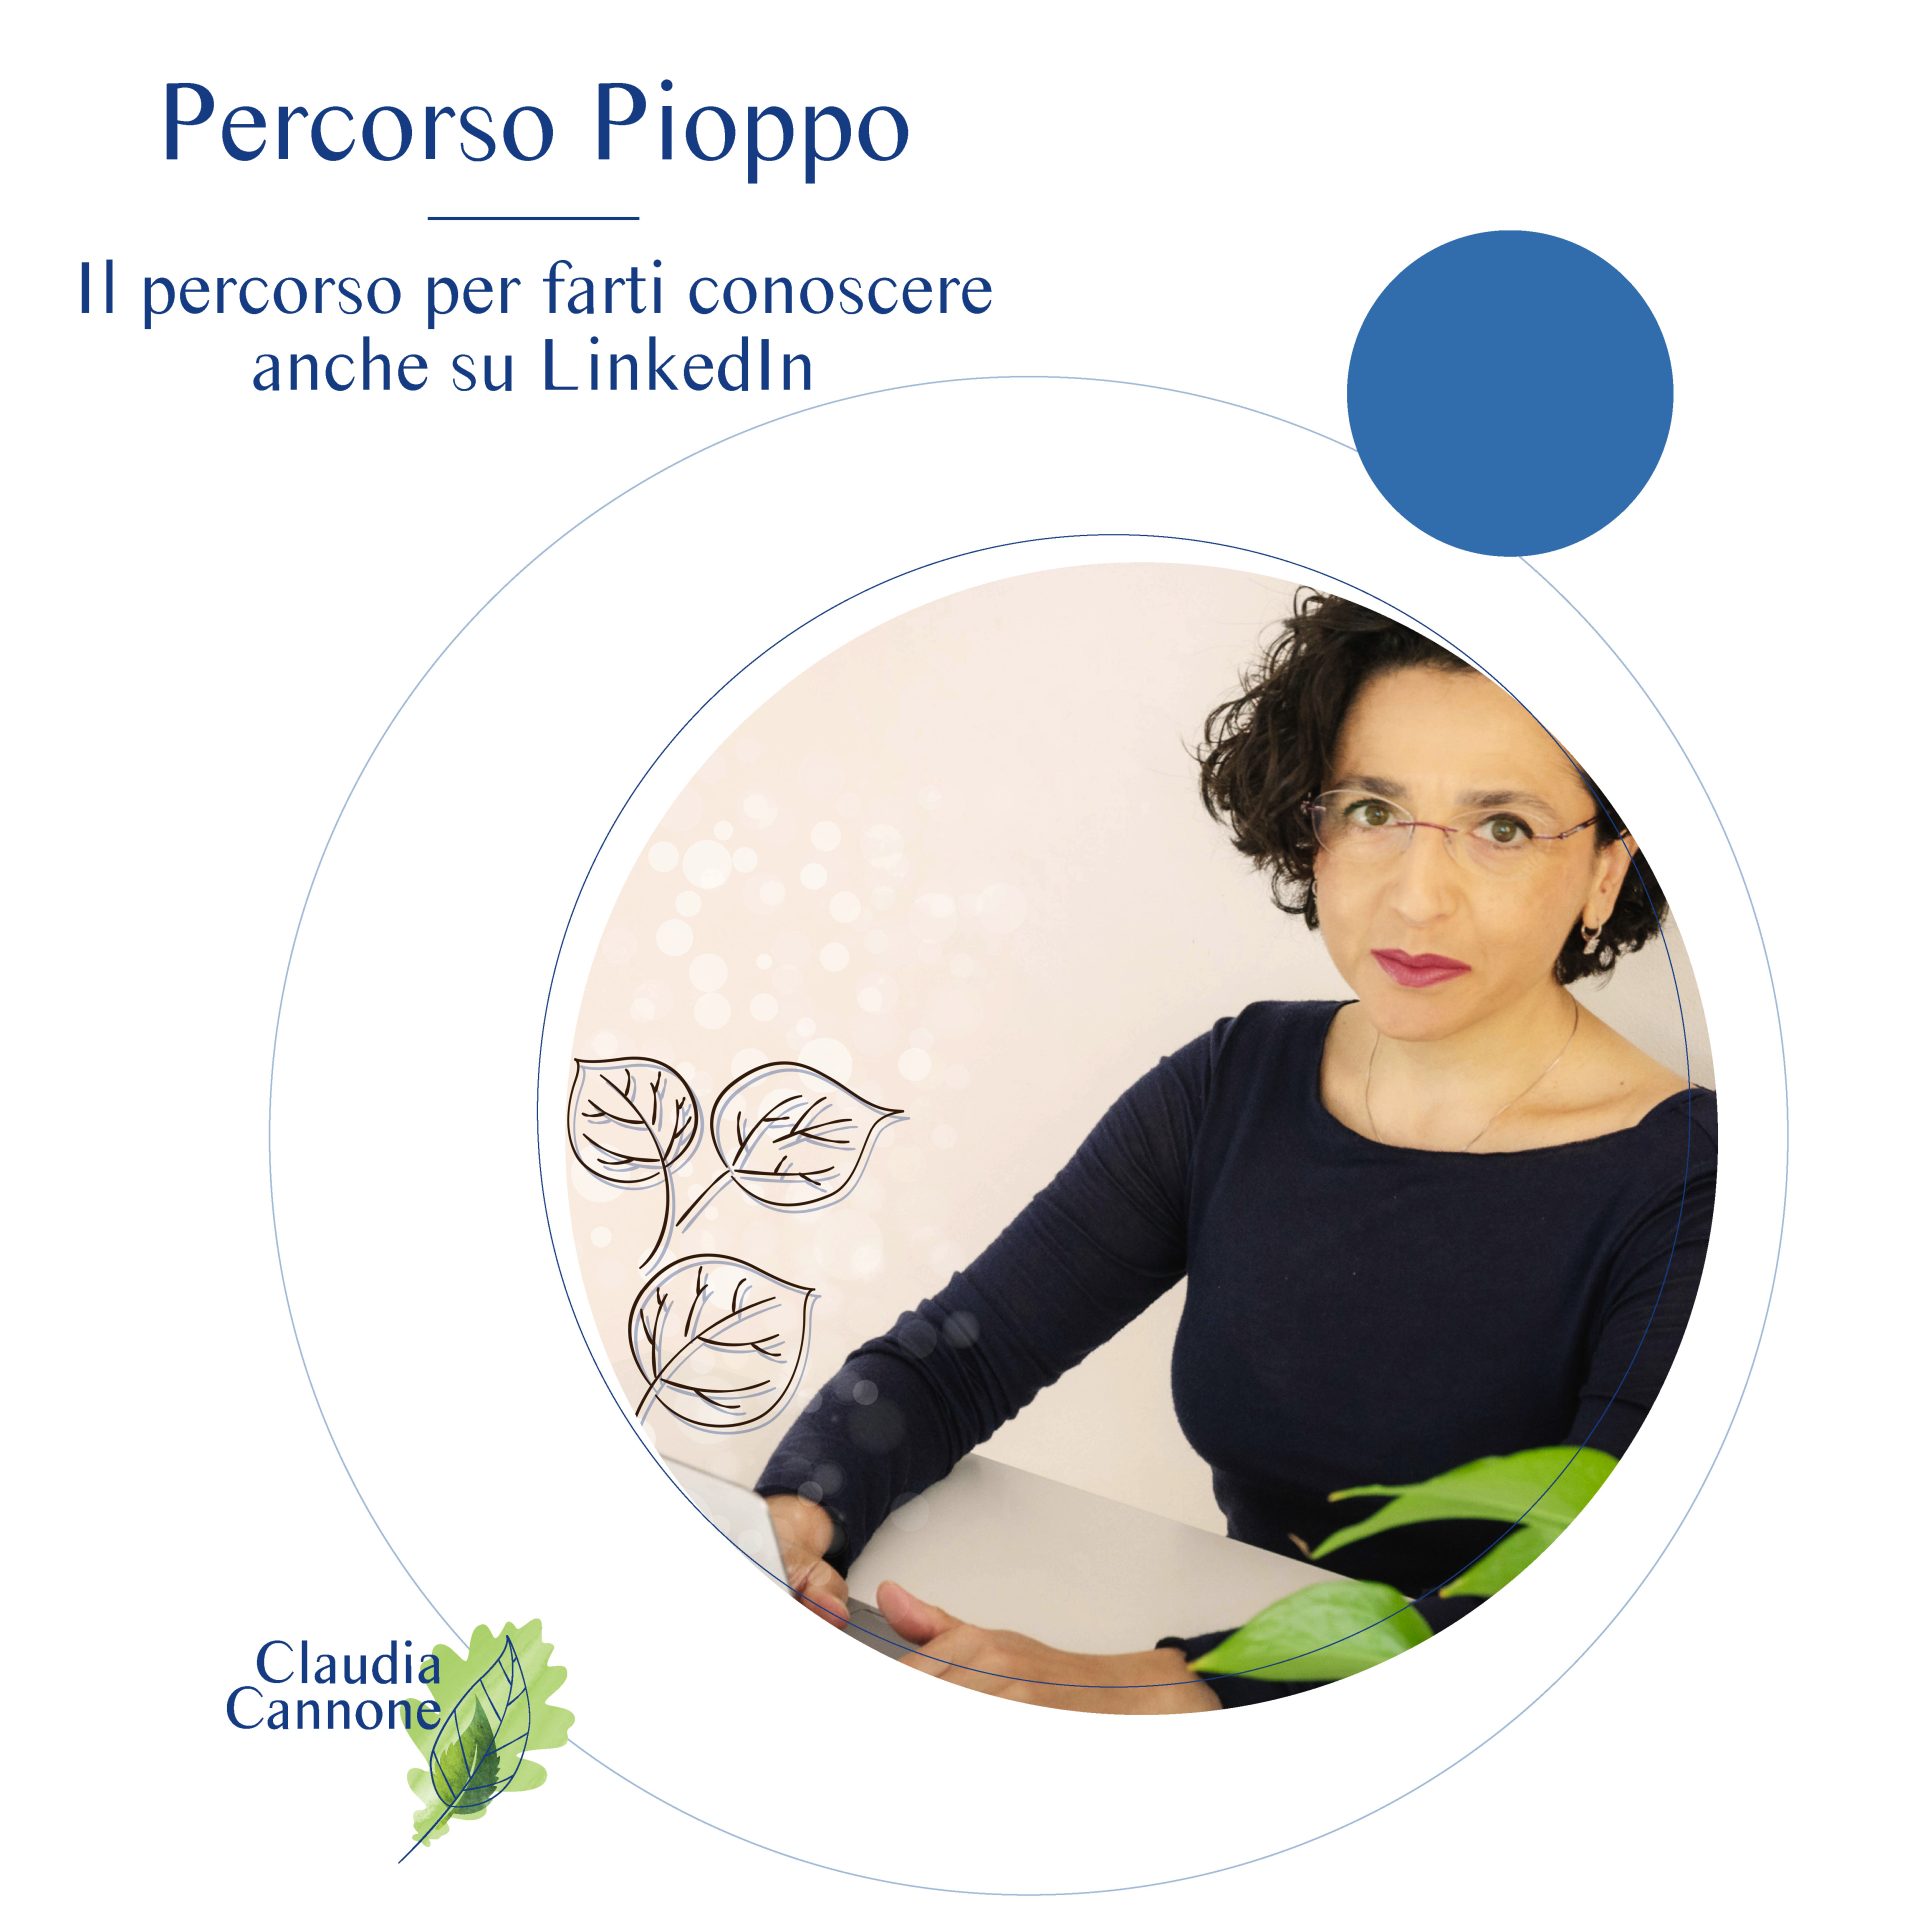 Grafica per feed Insta Claudia Cannone 7 Pioppo nuova - Pioppo, il Percorso di LinkedIn content Training